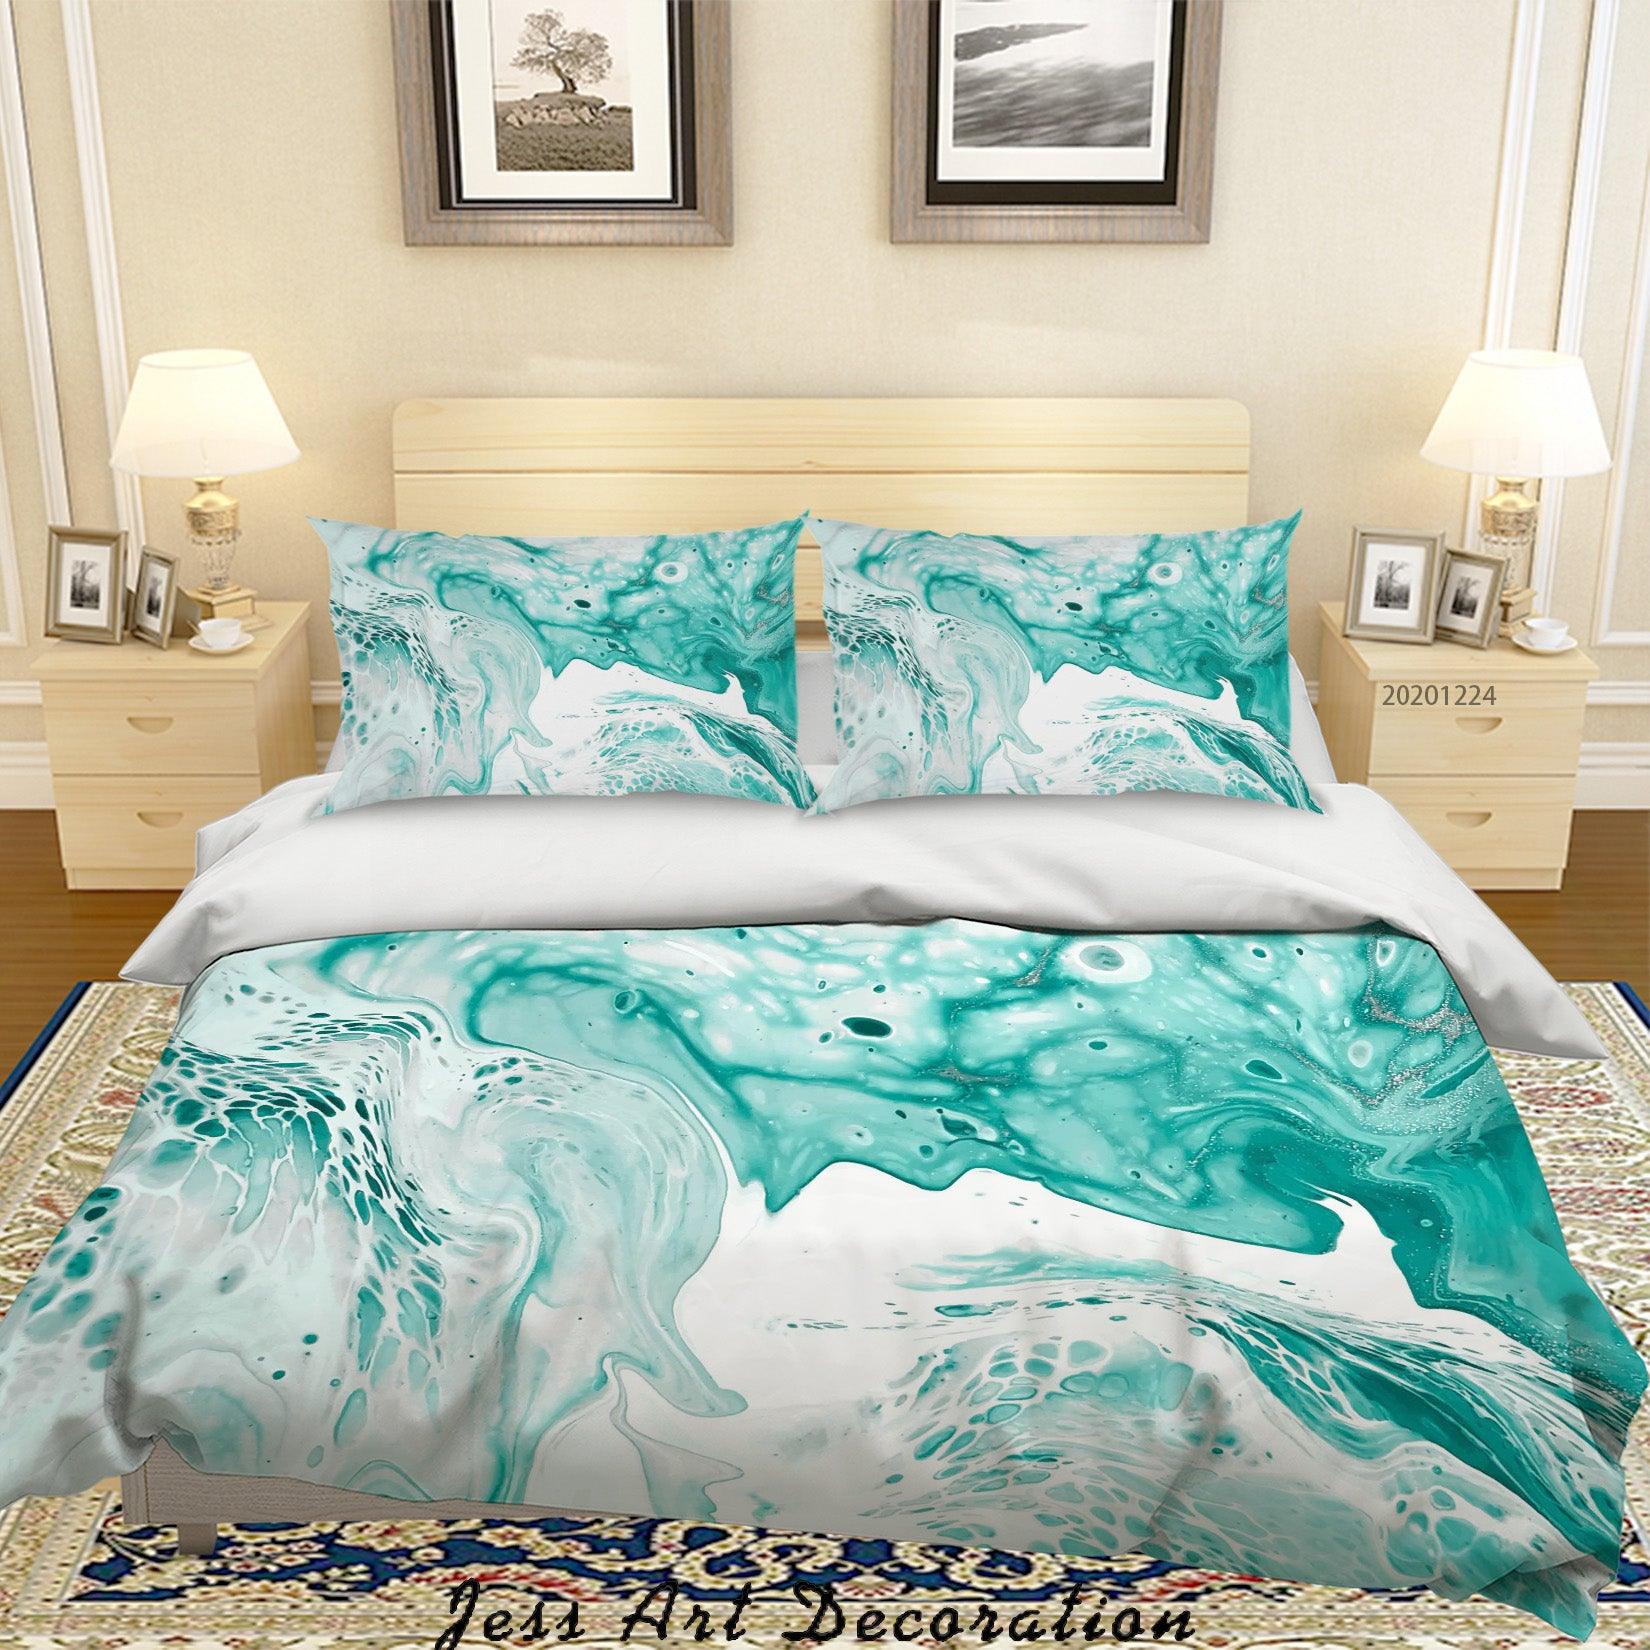 3D Watercolor Marble Texture Quilt Cover Set Bedding Set Duvet Cover Pillowcases 164 LQH- Jess Art Decoration